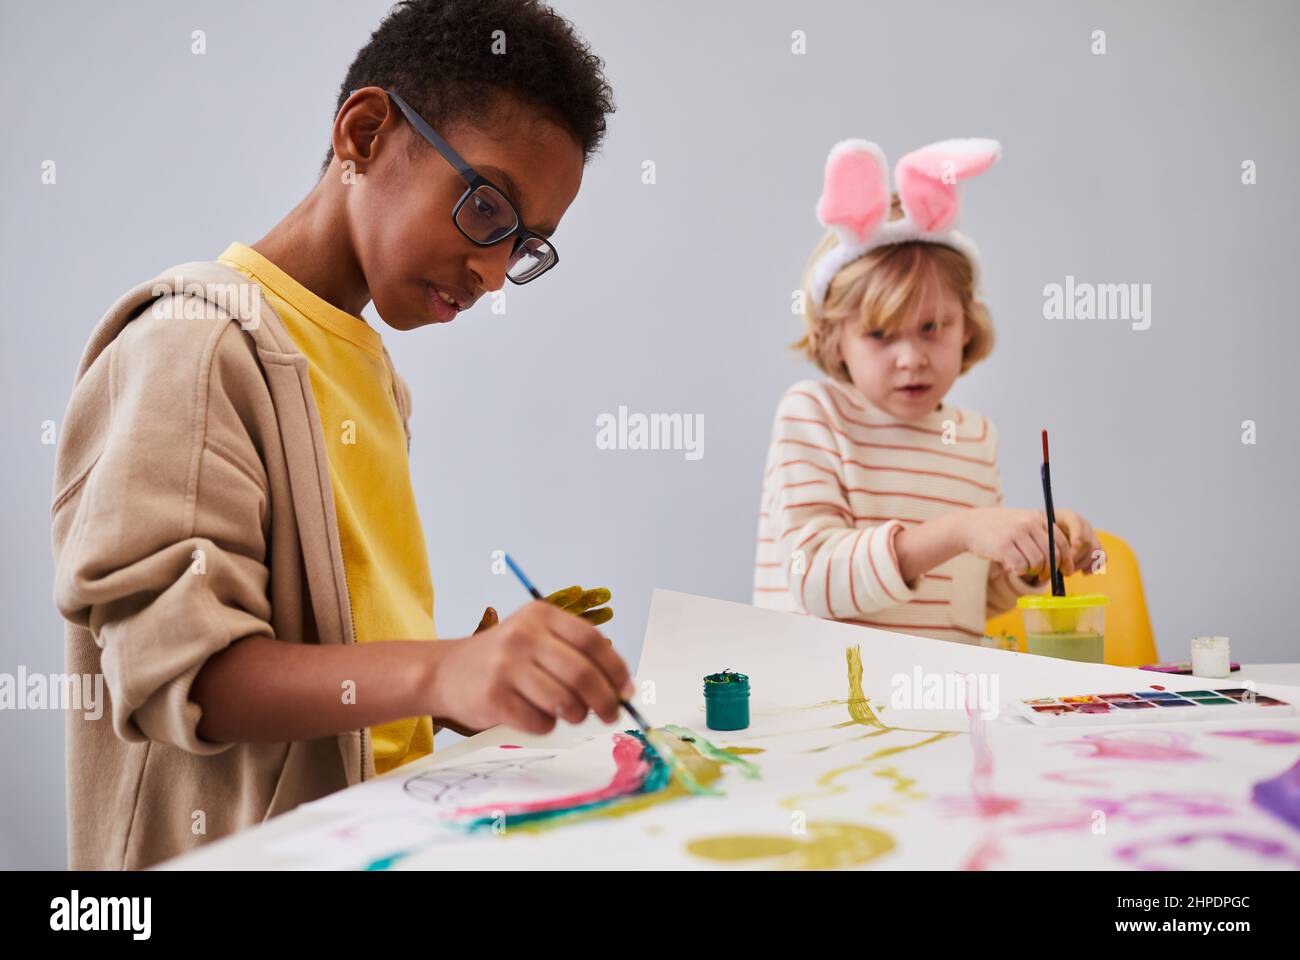 Portrait d'un garçon afro-américain sur une table d'art et d'artisanat tout en profitant d'une fête d'intérieur pour les enfants Banque D'Images